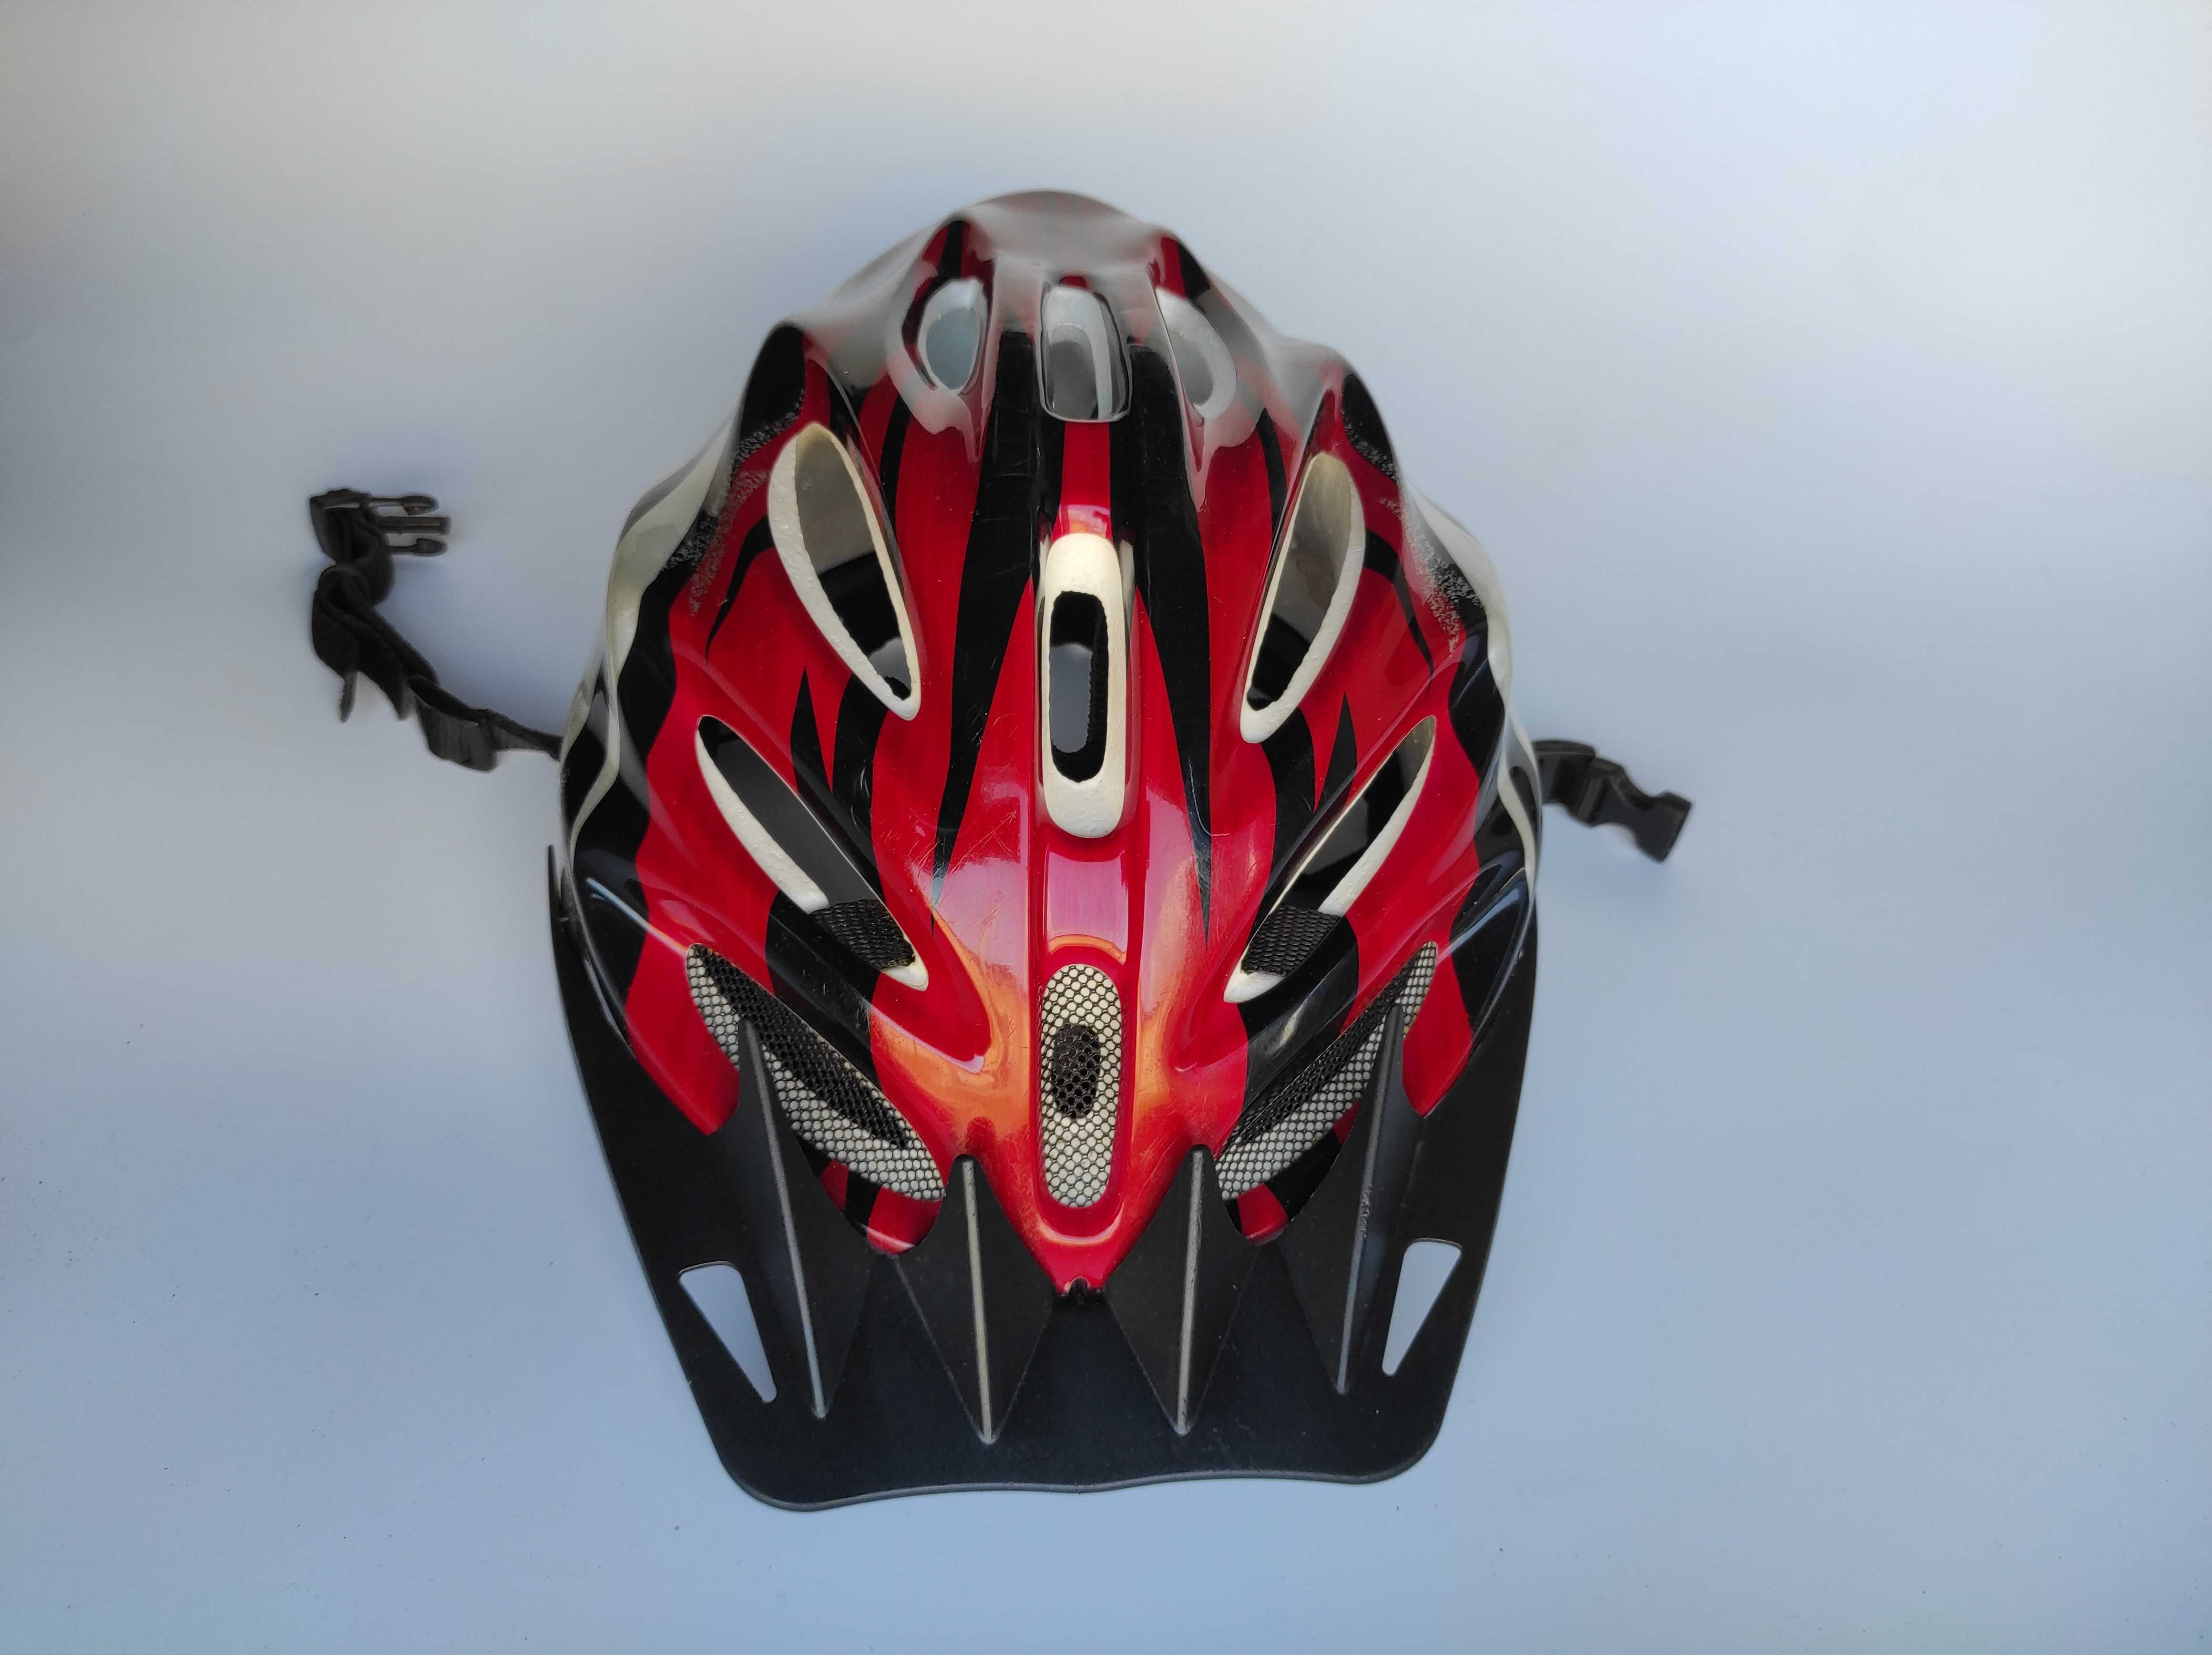 Шлем защитный, размер 55-59см, велосипедный, Германия.